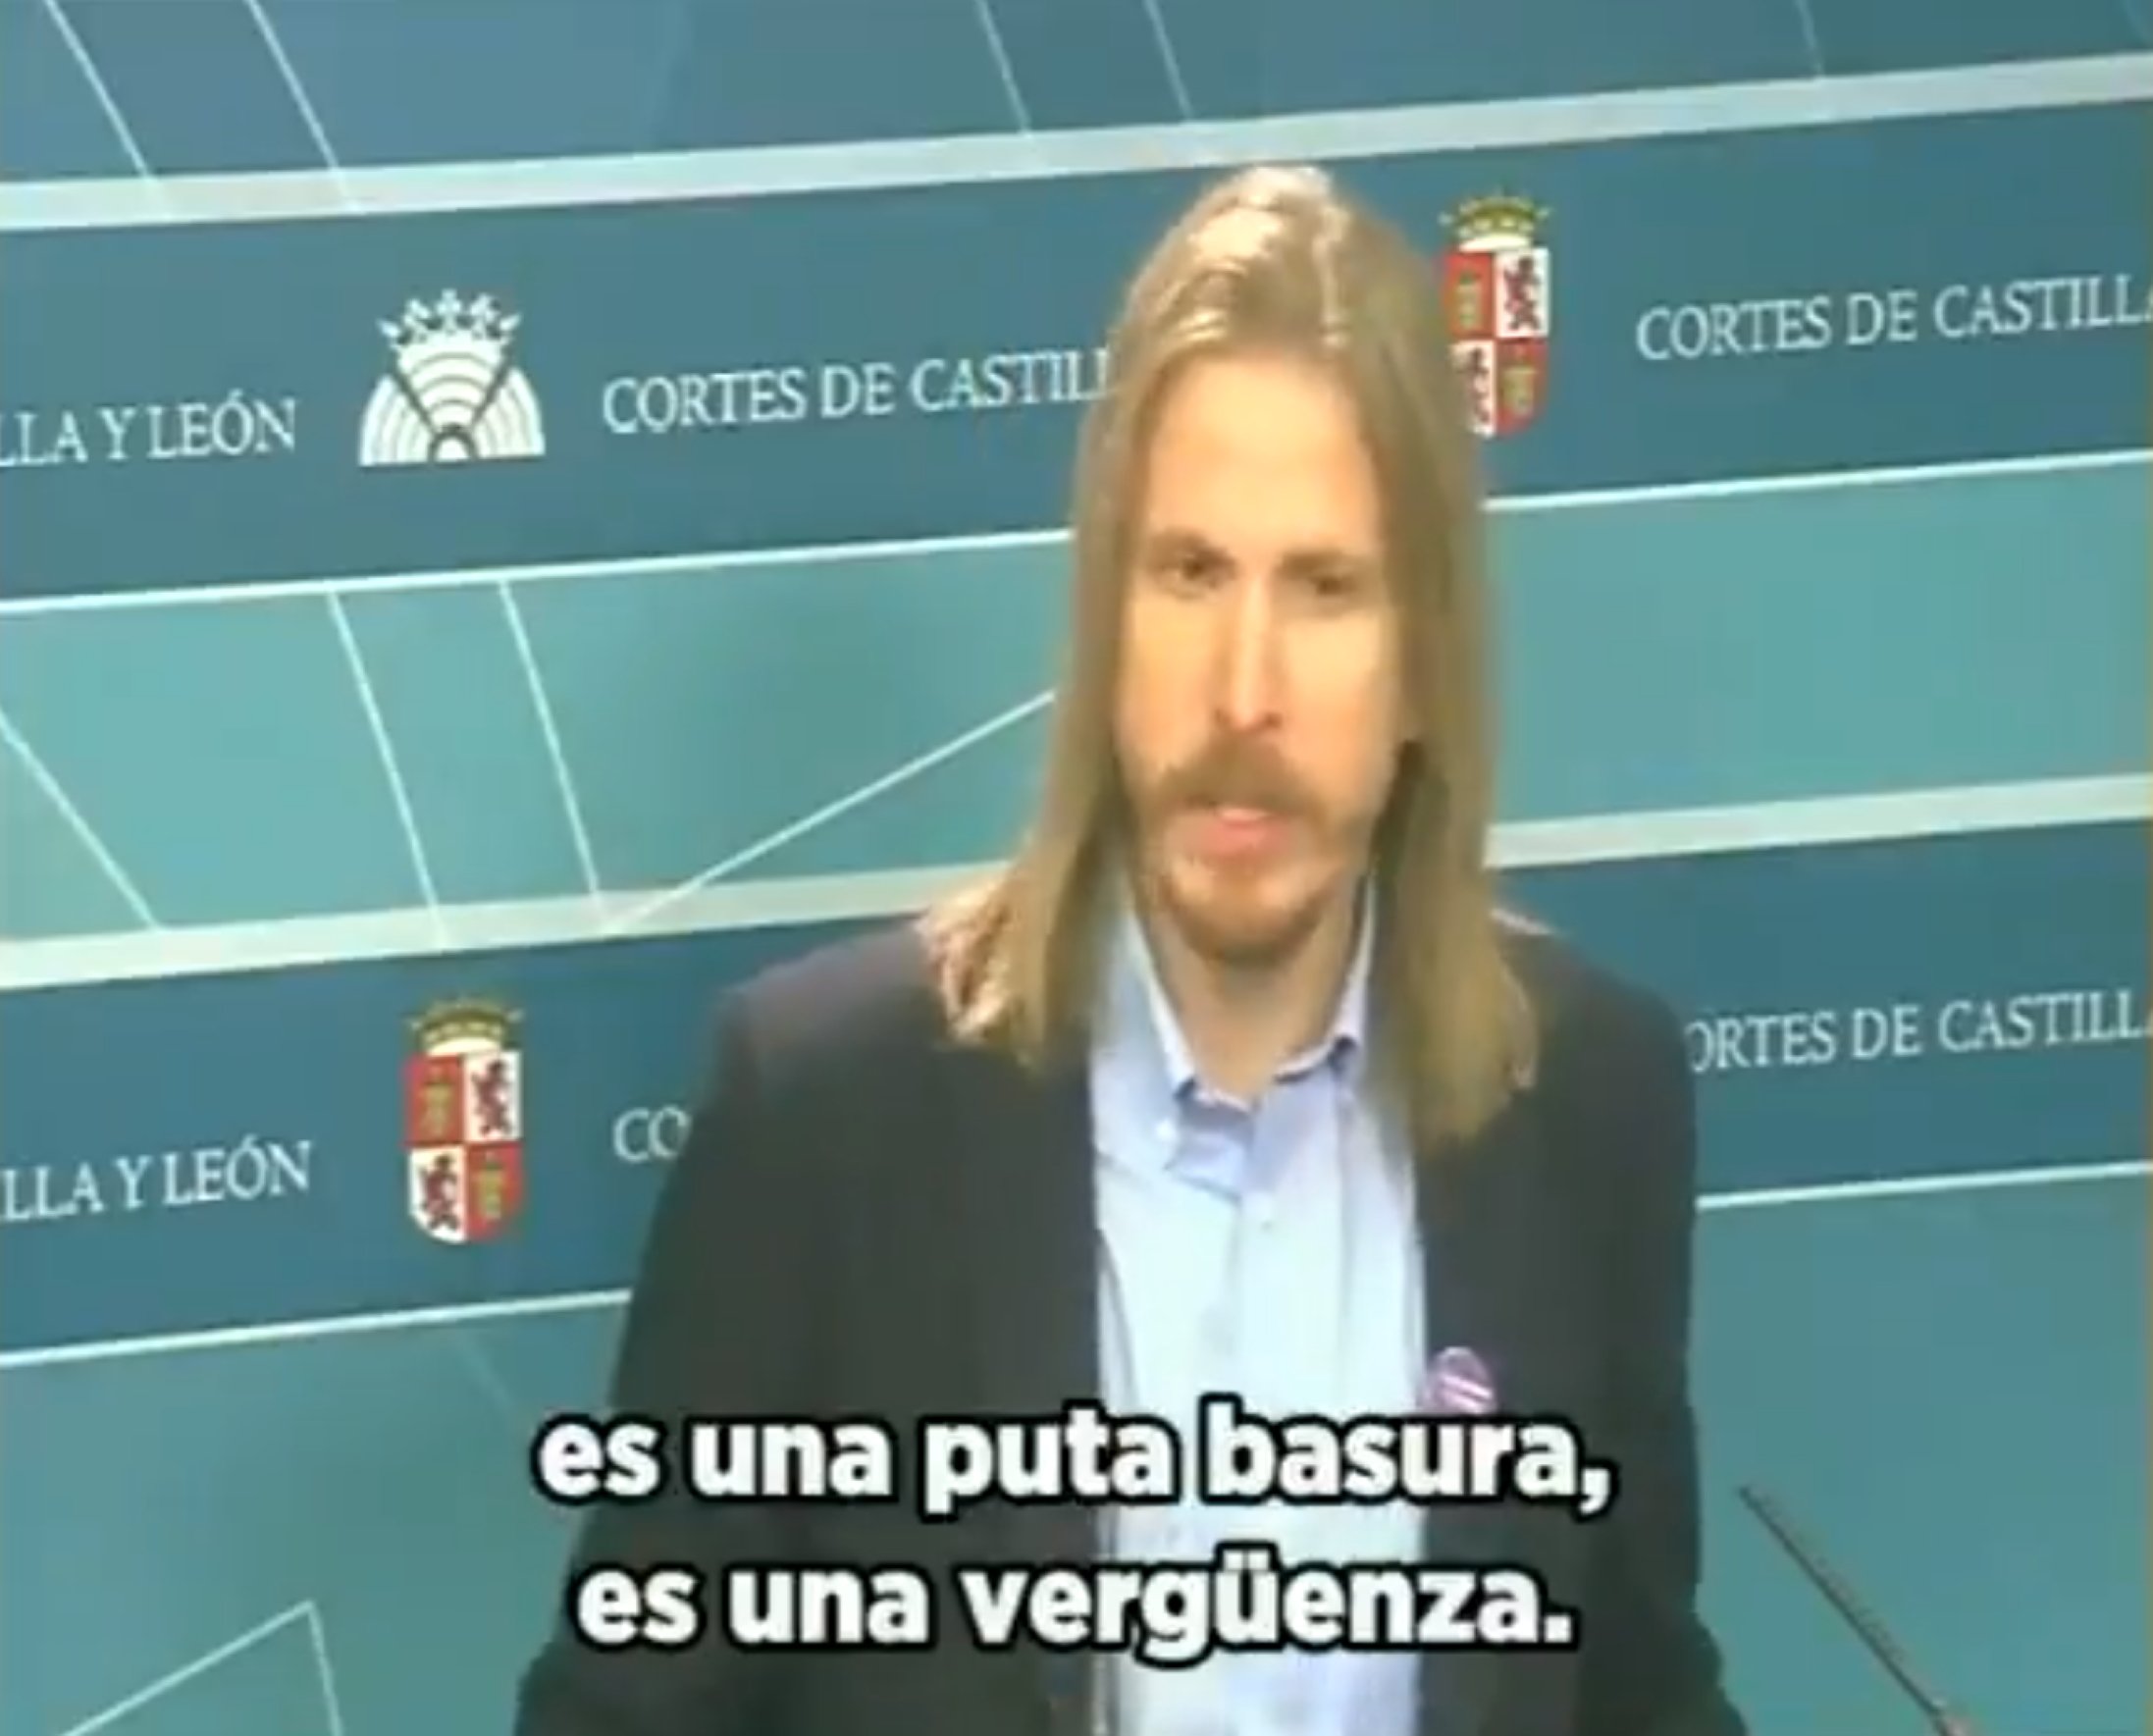 El vídeo d'un polític espanyol esclafant VOX arrasa: "Puta basura"